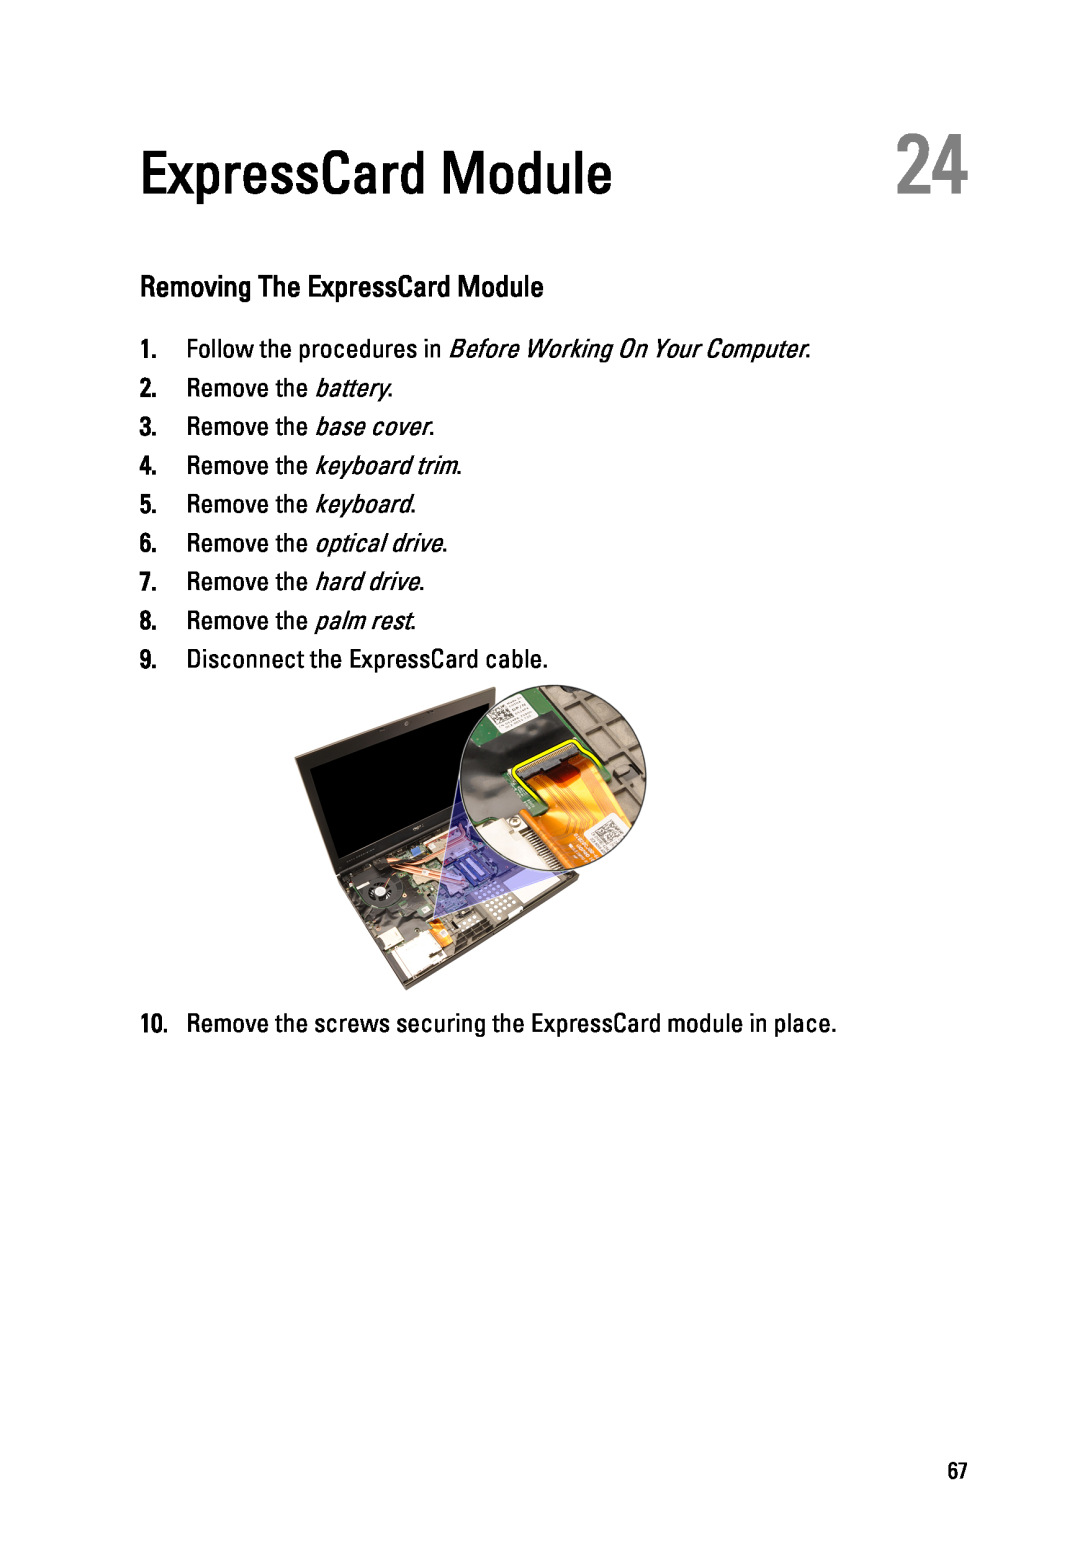 Dell M4600 Removing The ExpressCard Module, Remove the hard drive 8. Remove the palm rest, Remove the keyboard trim 